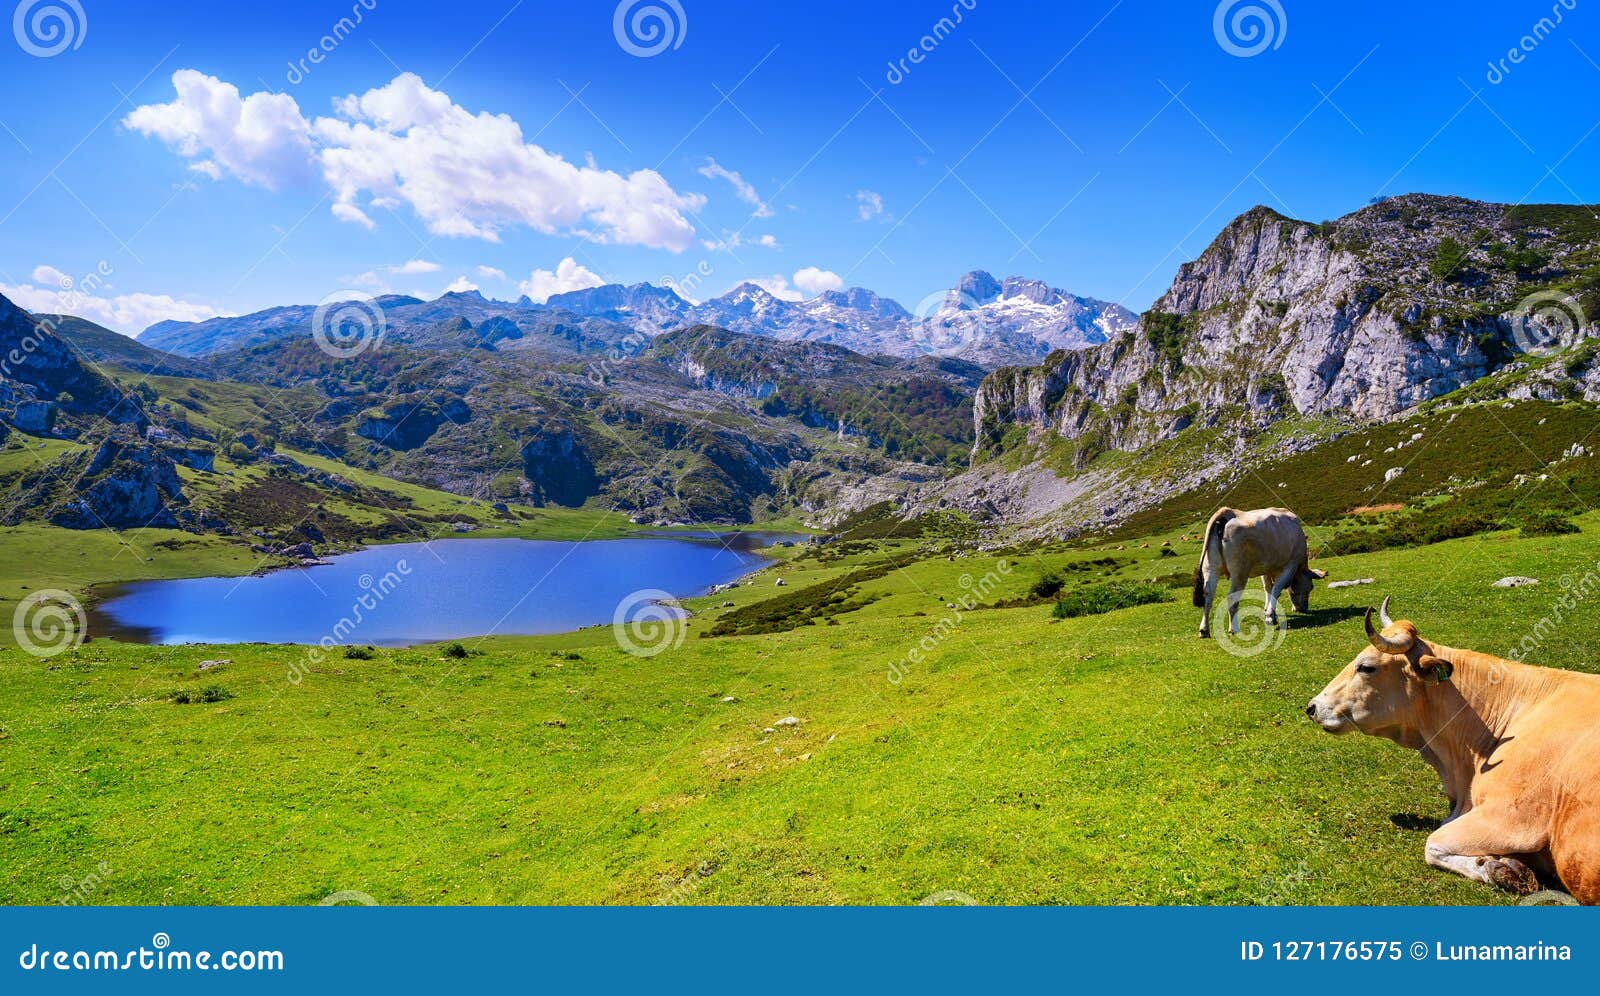 ercina lake at picos de europa in asturias spain